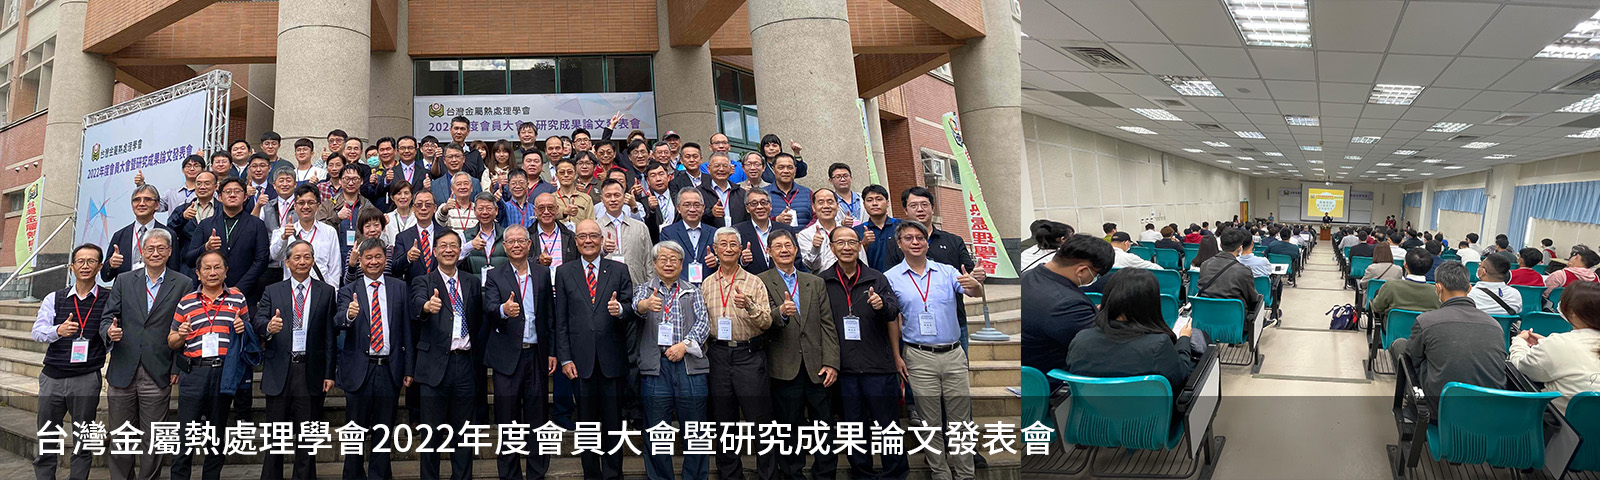 台灣金屬熱處理學會2022年度會員大會暨研究成果論文發表會園滿成功